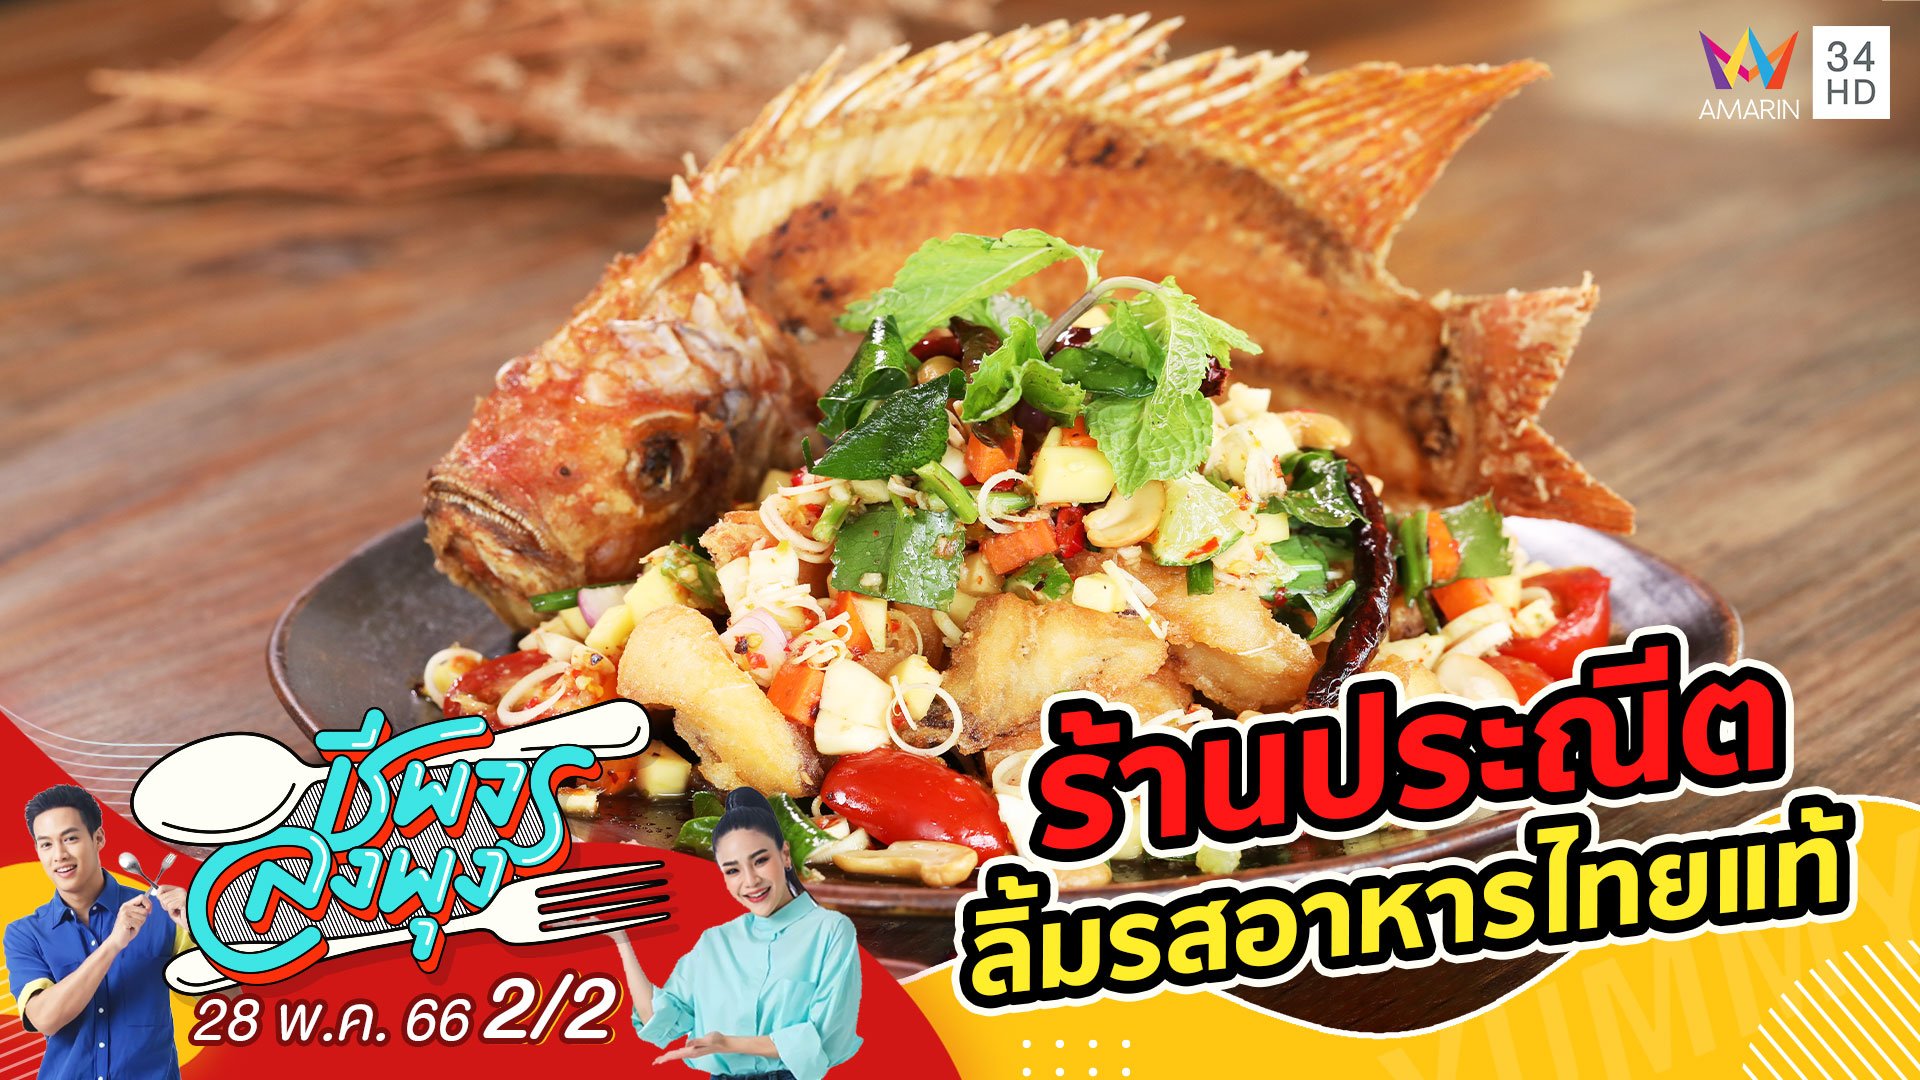 ลิ้มรสอาหารไทยแท้ @ ร้านประณีต | ชีพจรลงพุง | 28 พ.ค. 66 (2/2) | AMARIN TVHD34